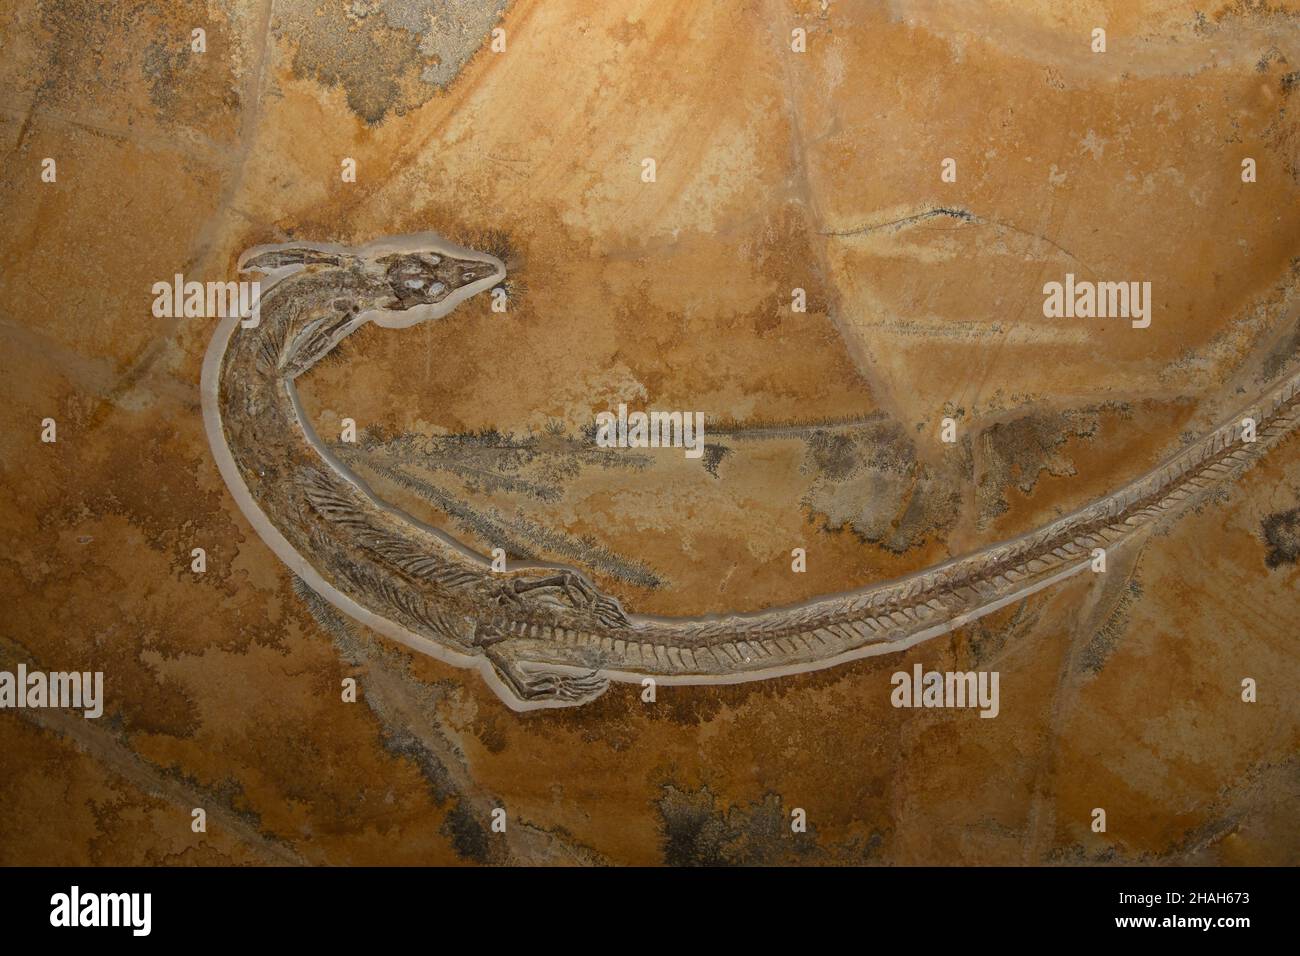 Un reptile marin fossile Pleurosaurus goldfussi de la période mésozoïque. Banque D'Images